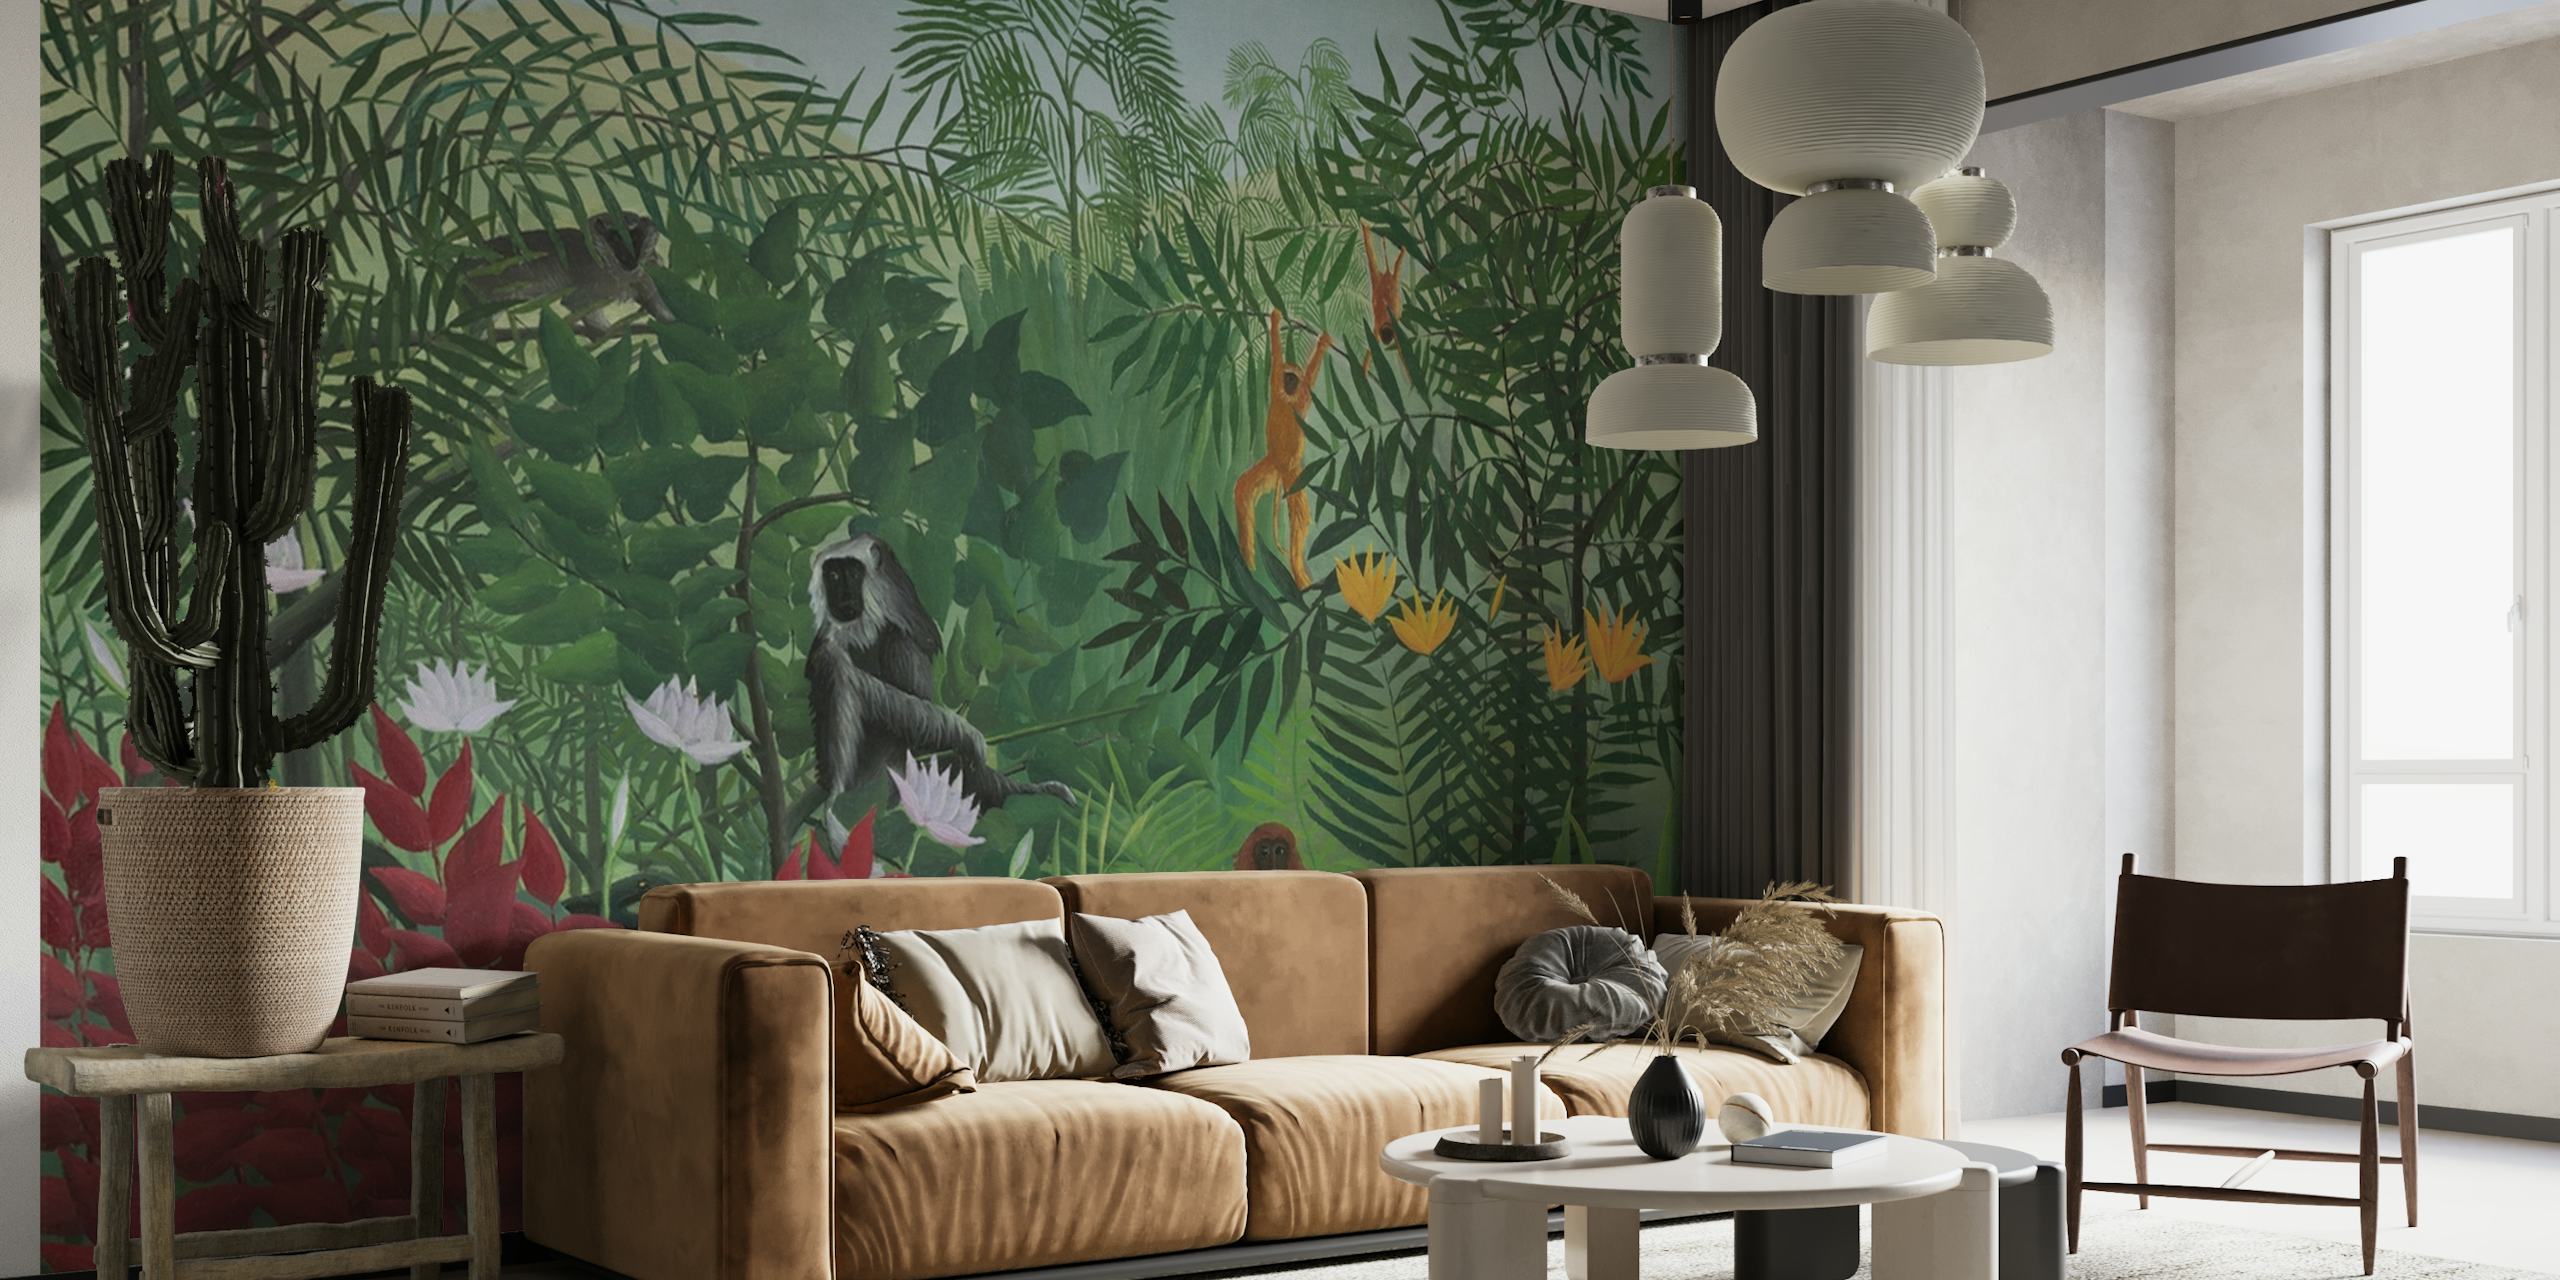 Muurschildering met een tropisch bostafereel met apen, geïnspireerd op de kunststijl van Henri Rousseau.